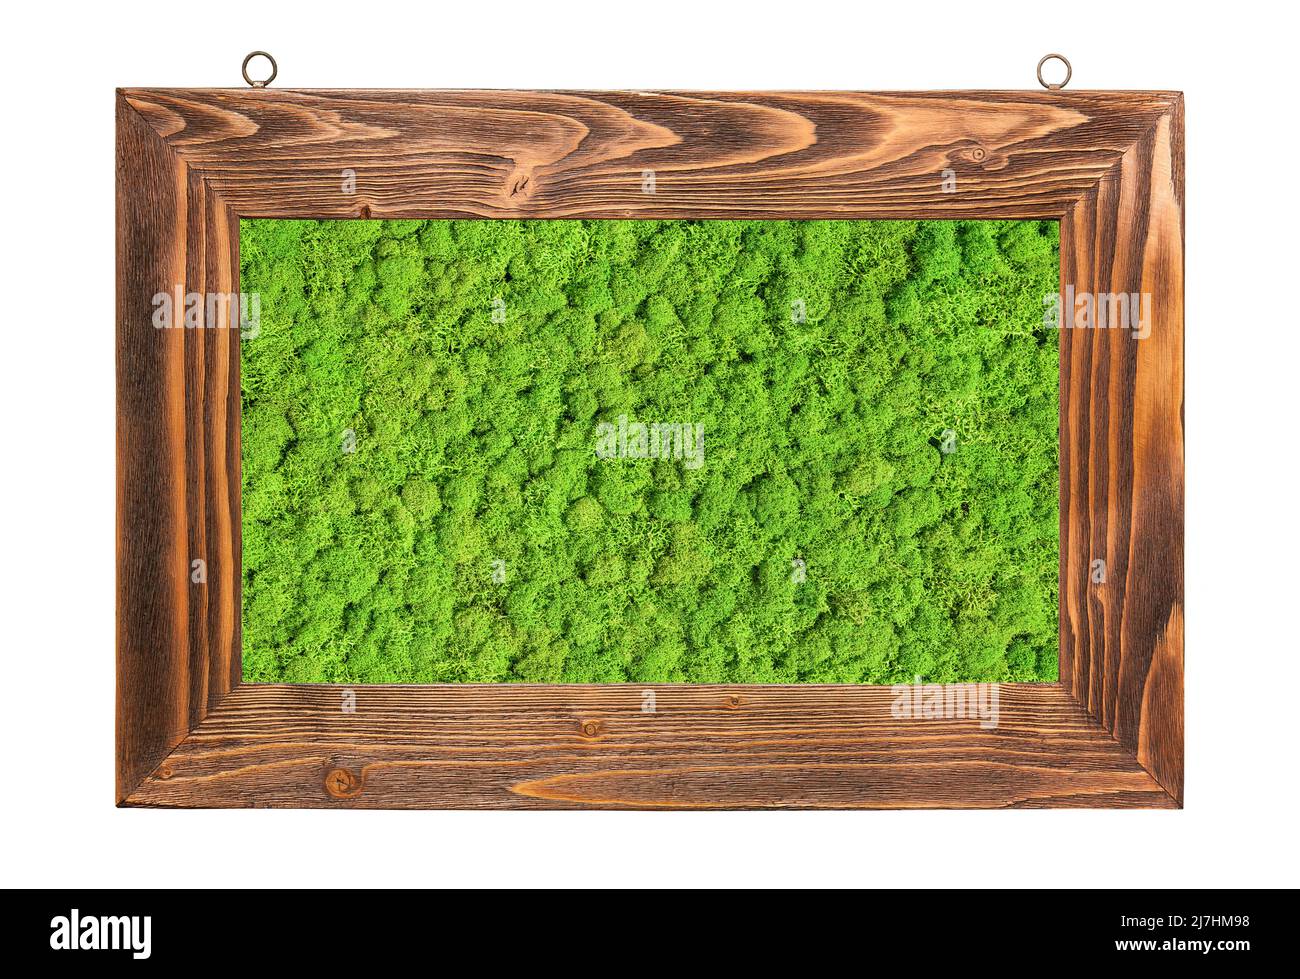 Grün erhaltene Moos eingerahmt, isoliert auf weißem Hintergrund Stockfoto